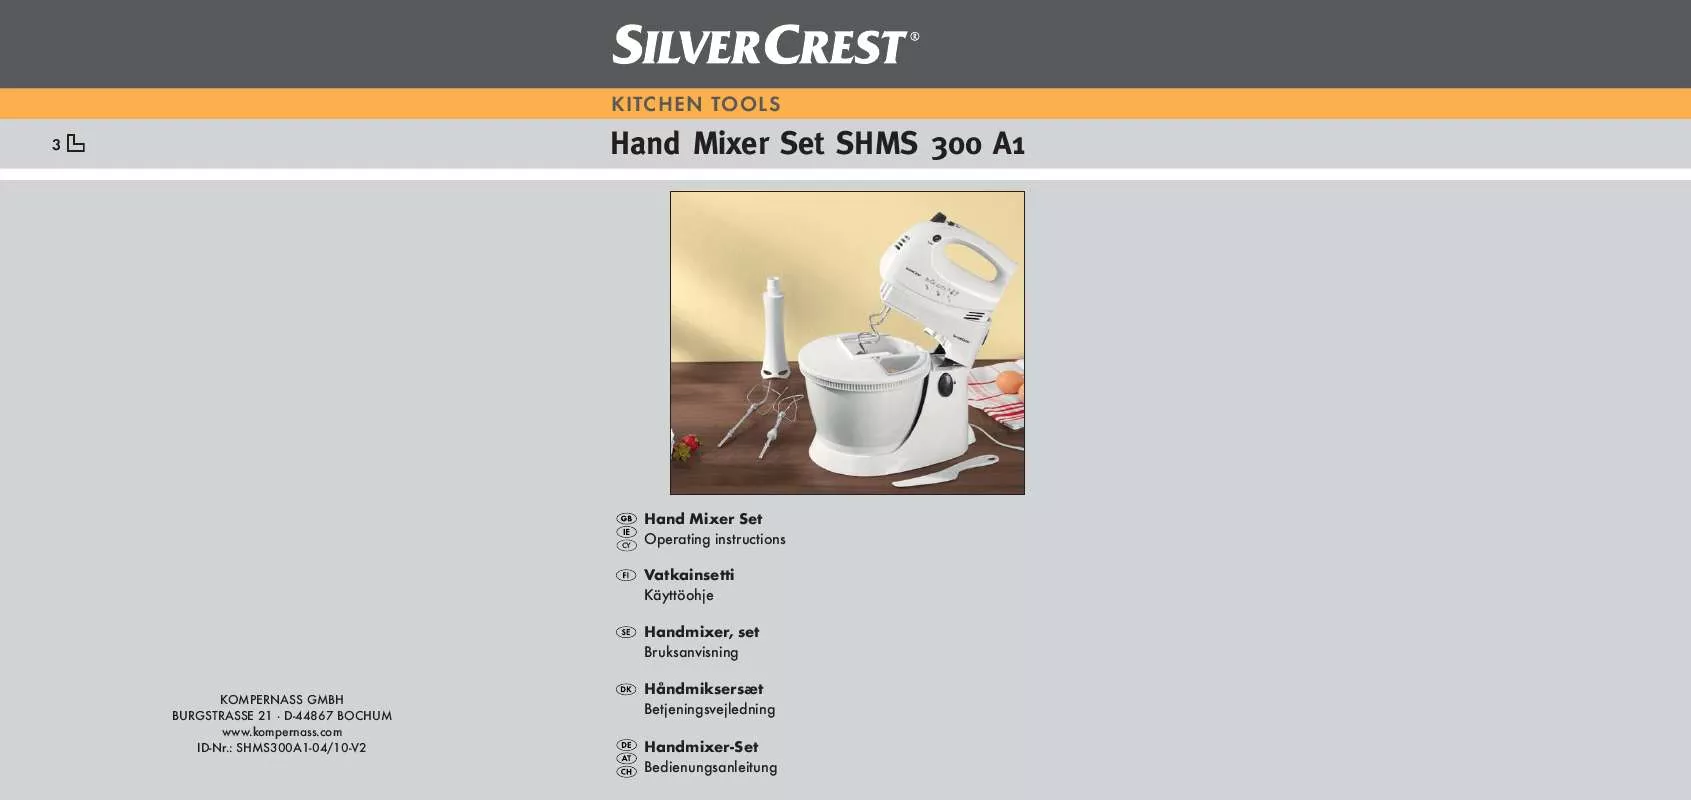 Mode d'emploi SILVERCREST SHMS 300 A1 HAND MIXER SET